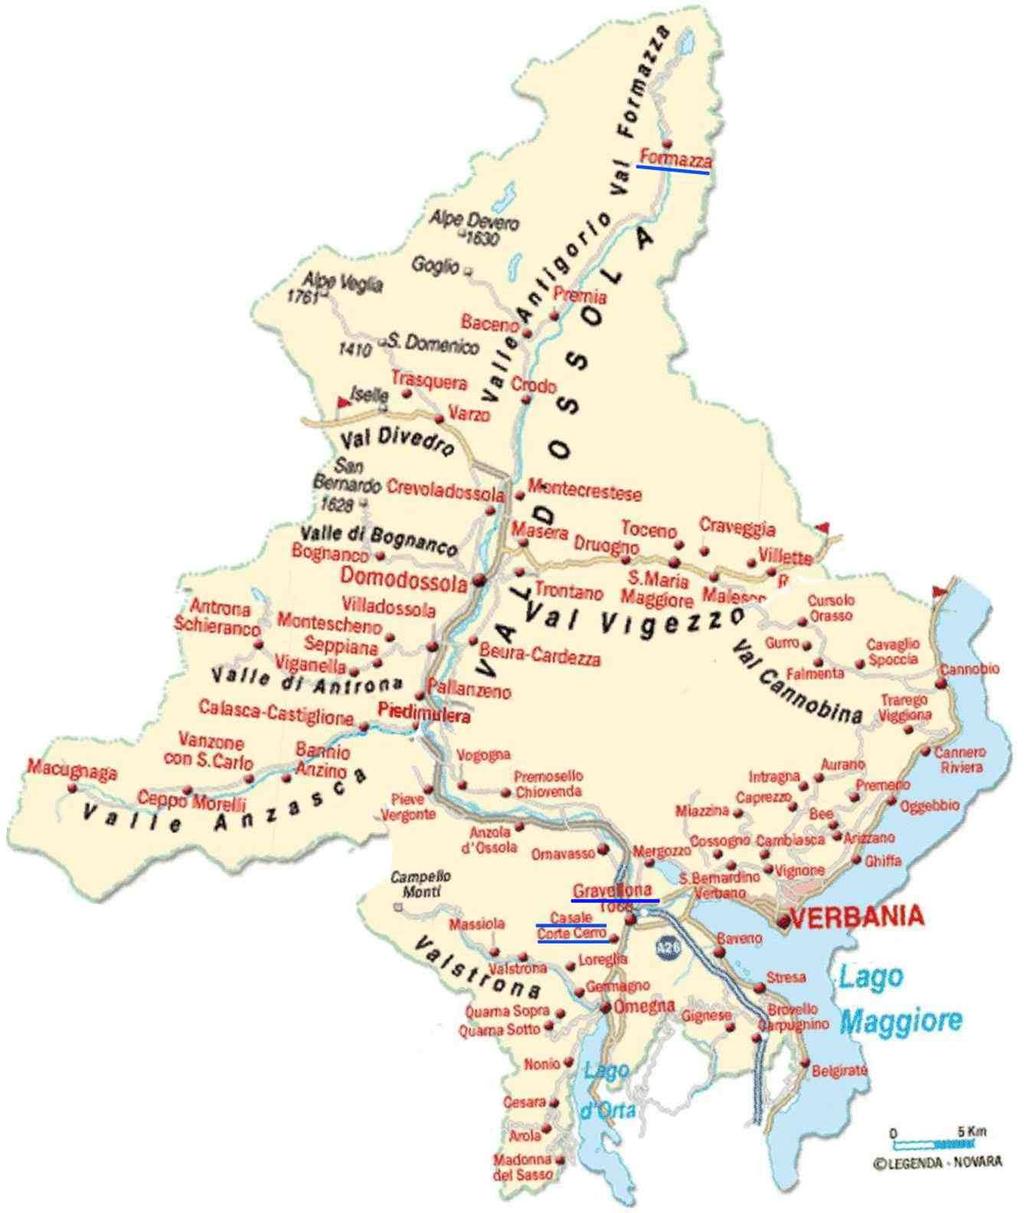 Cartina fisica del VCO Nascita della Provincia del VCO: 1992 a seguito di un referendum indotto per motivi politici.